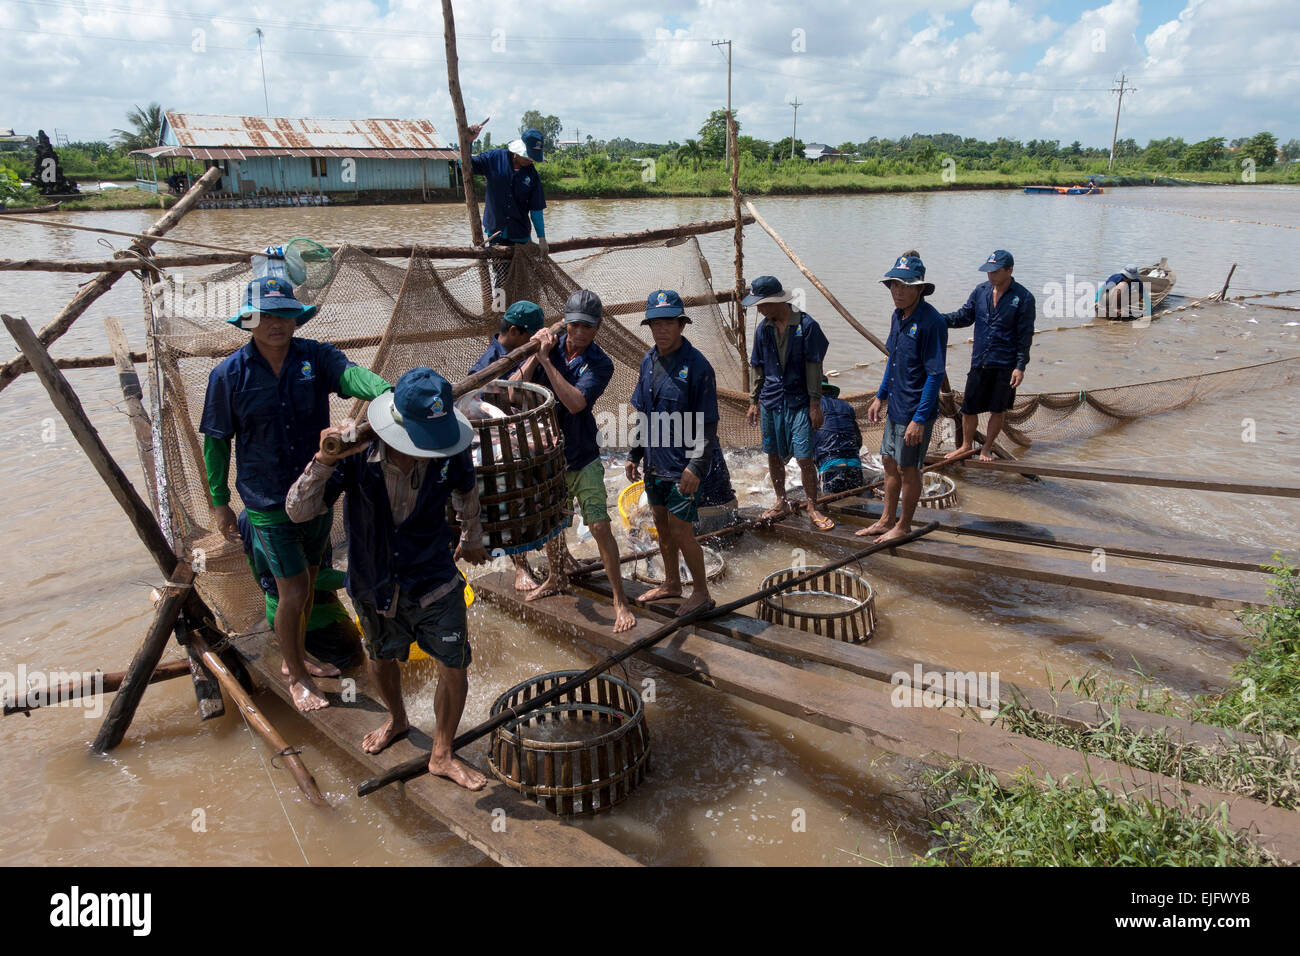 Fish farm, trabajadores capturar peces de agua dulce de un criadero de peces, el delta del Mekong, Vietnam Foto de stock